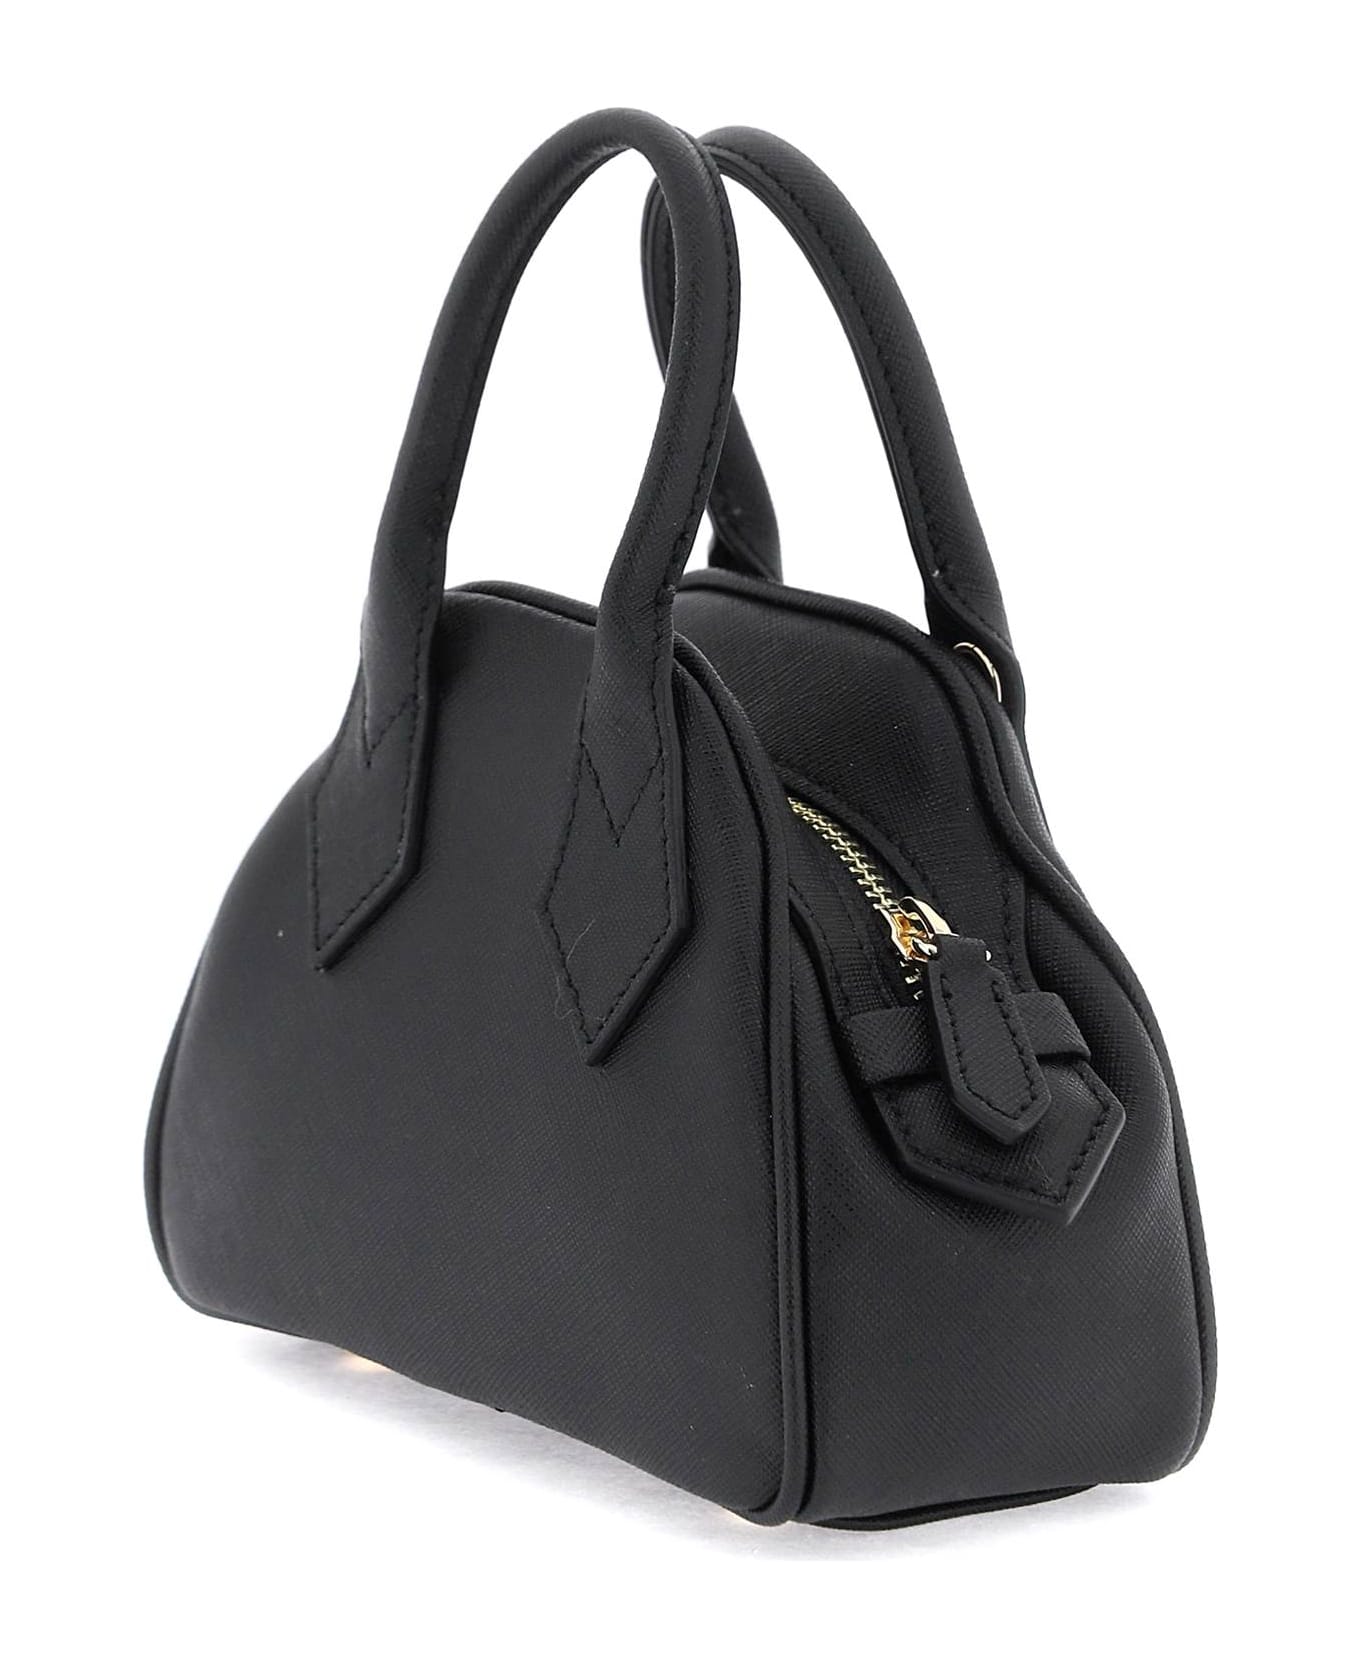 Vivienne Westwood Yasmine Mini Bag - BLACK (Black)